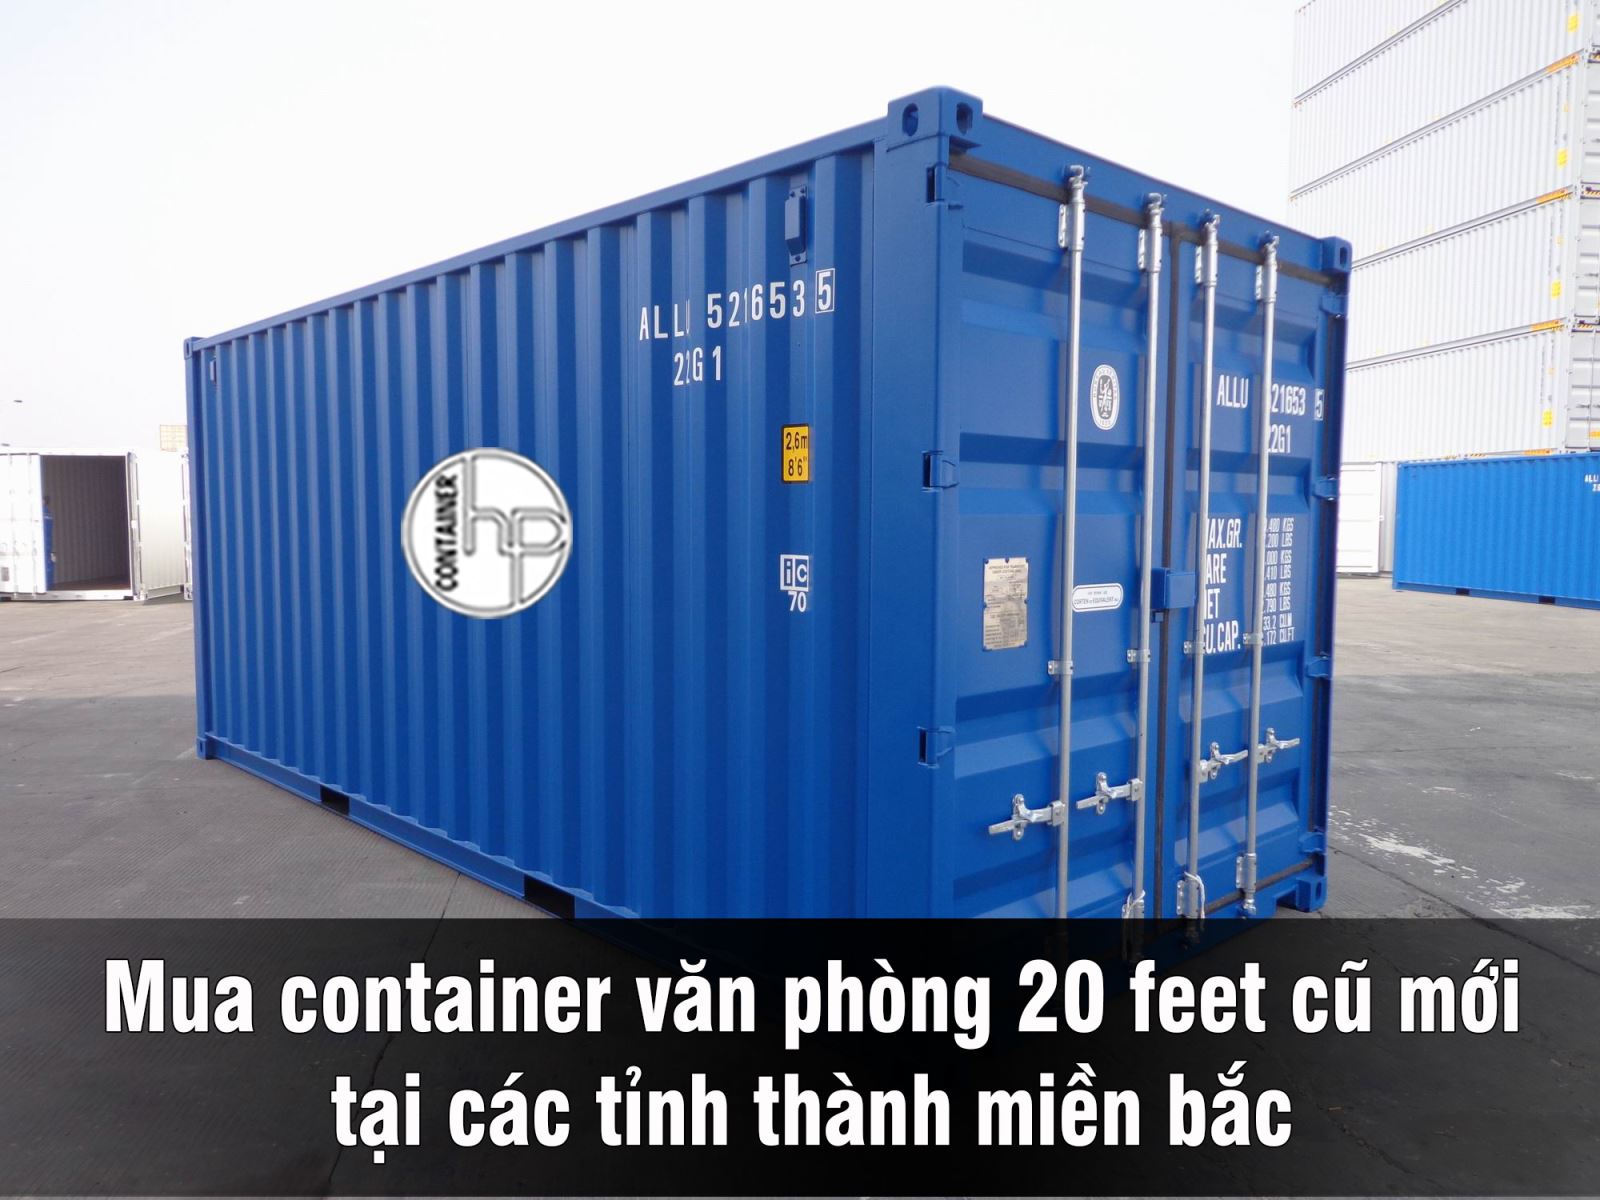 Giá container văn phòng 20 feet – Liệu “rẻ” đã đủ? - Ảnh 2